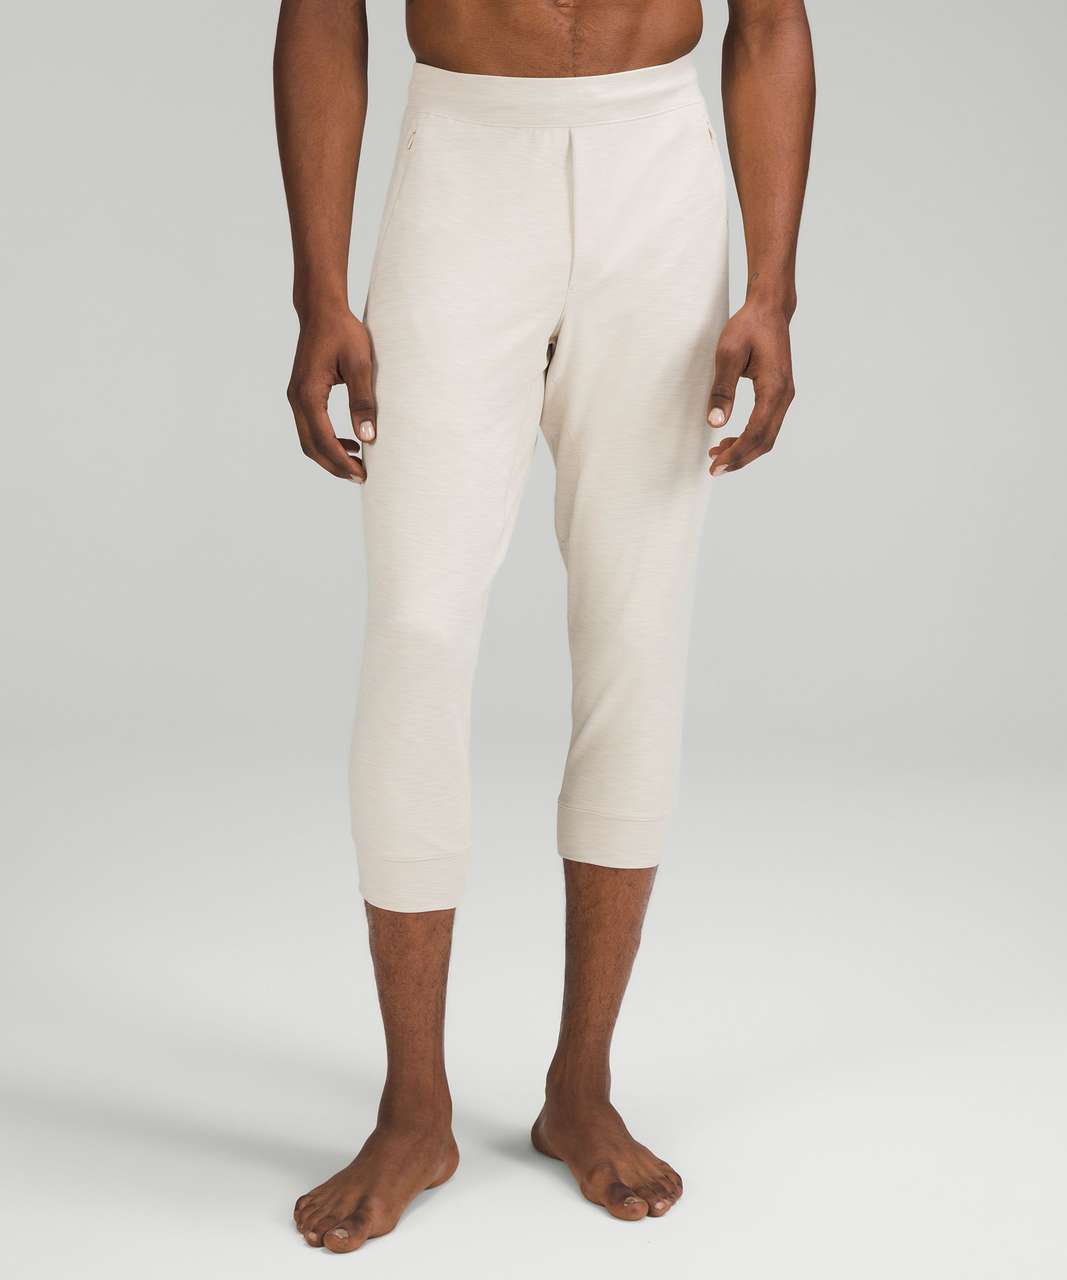 Lululemon Balancer Cropped Pant 22" - Heathered Natural Ivory